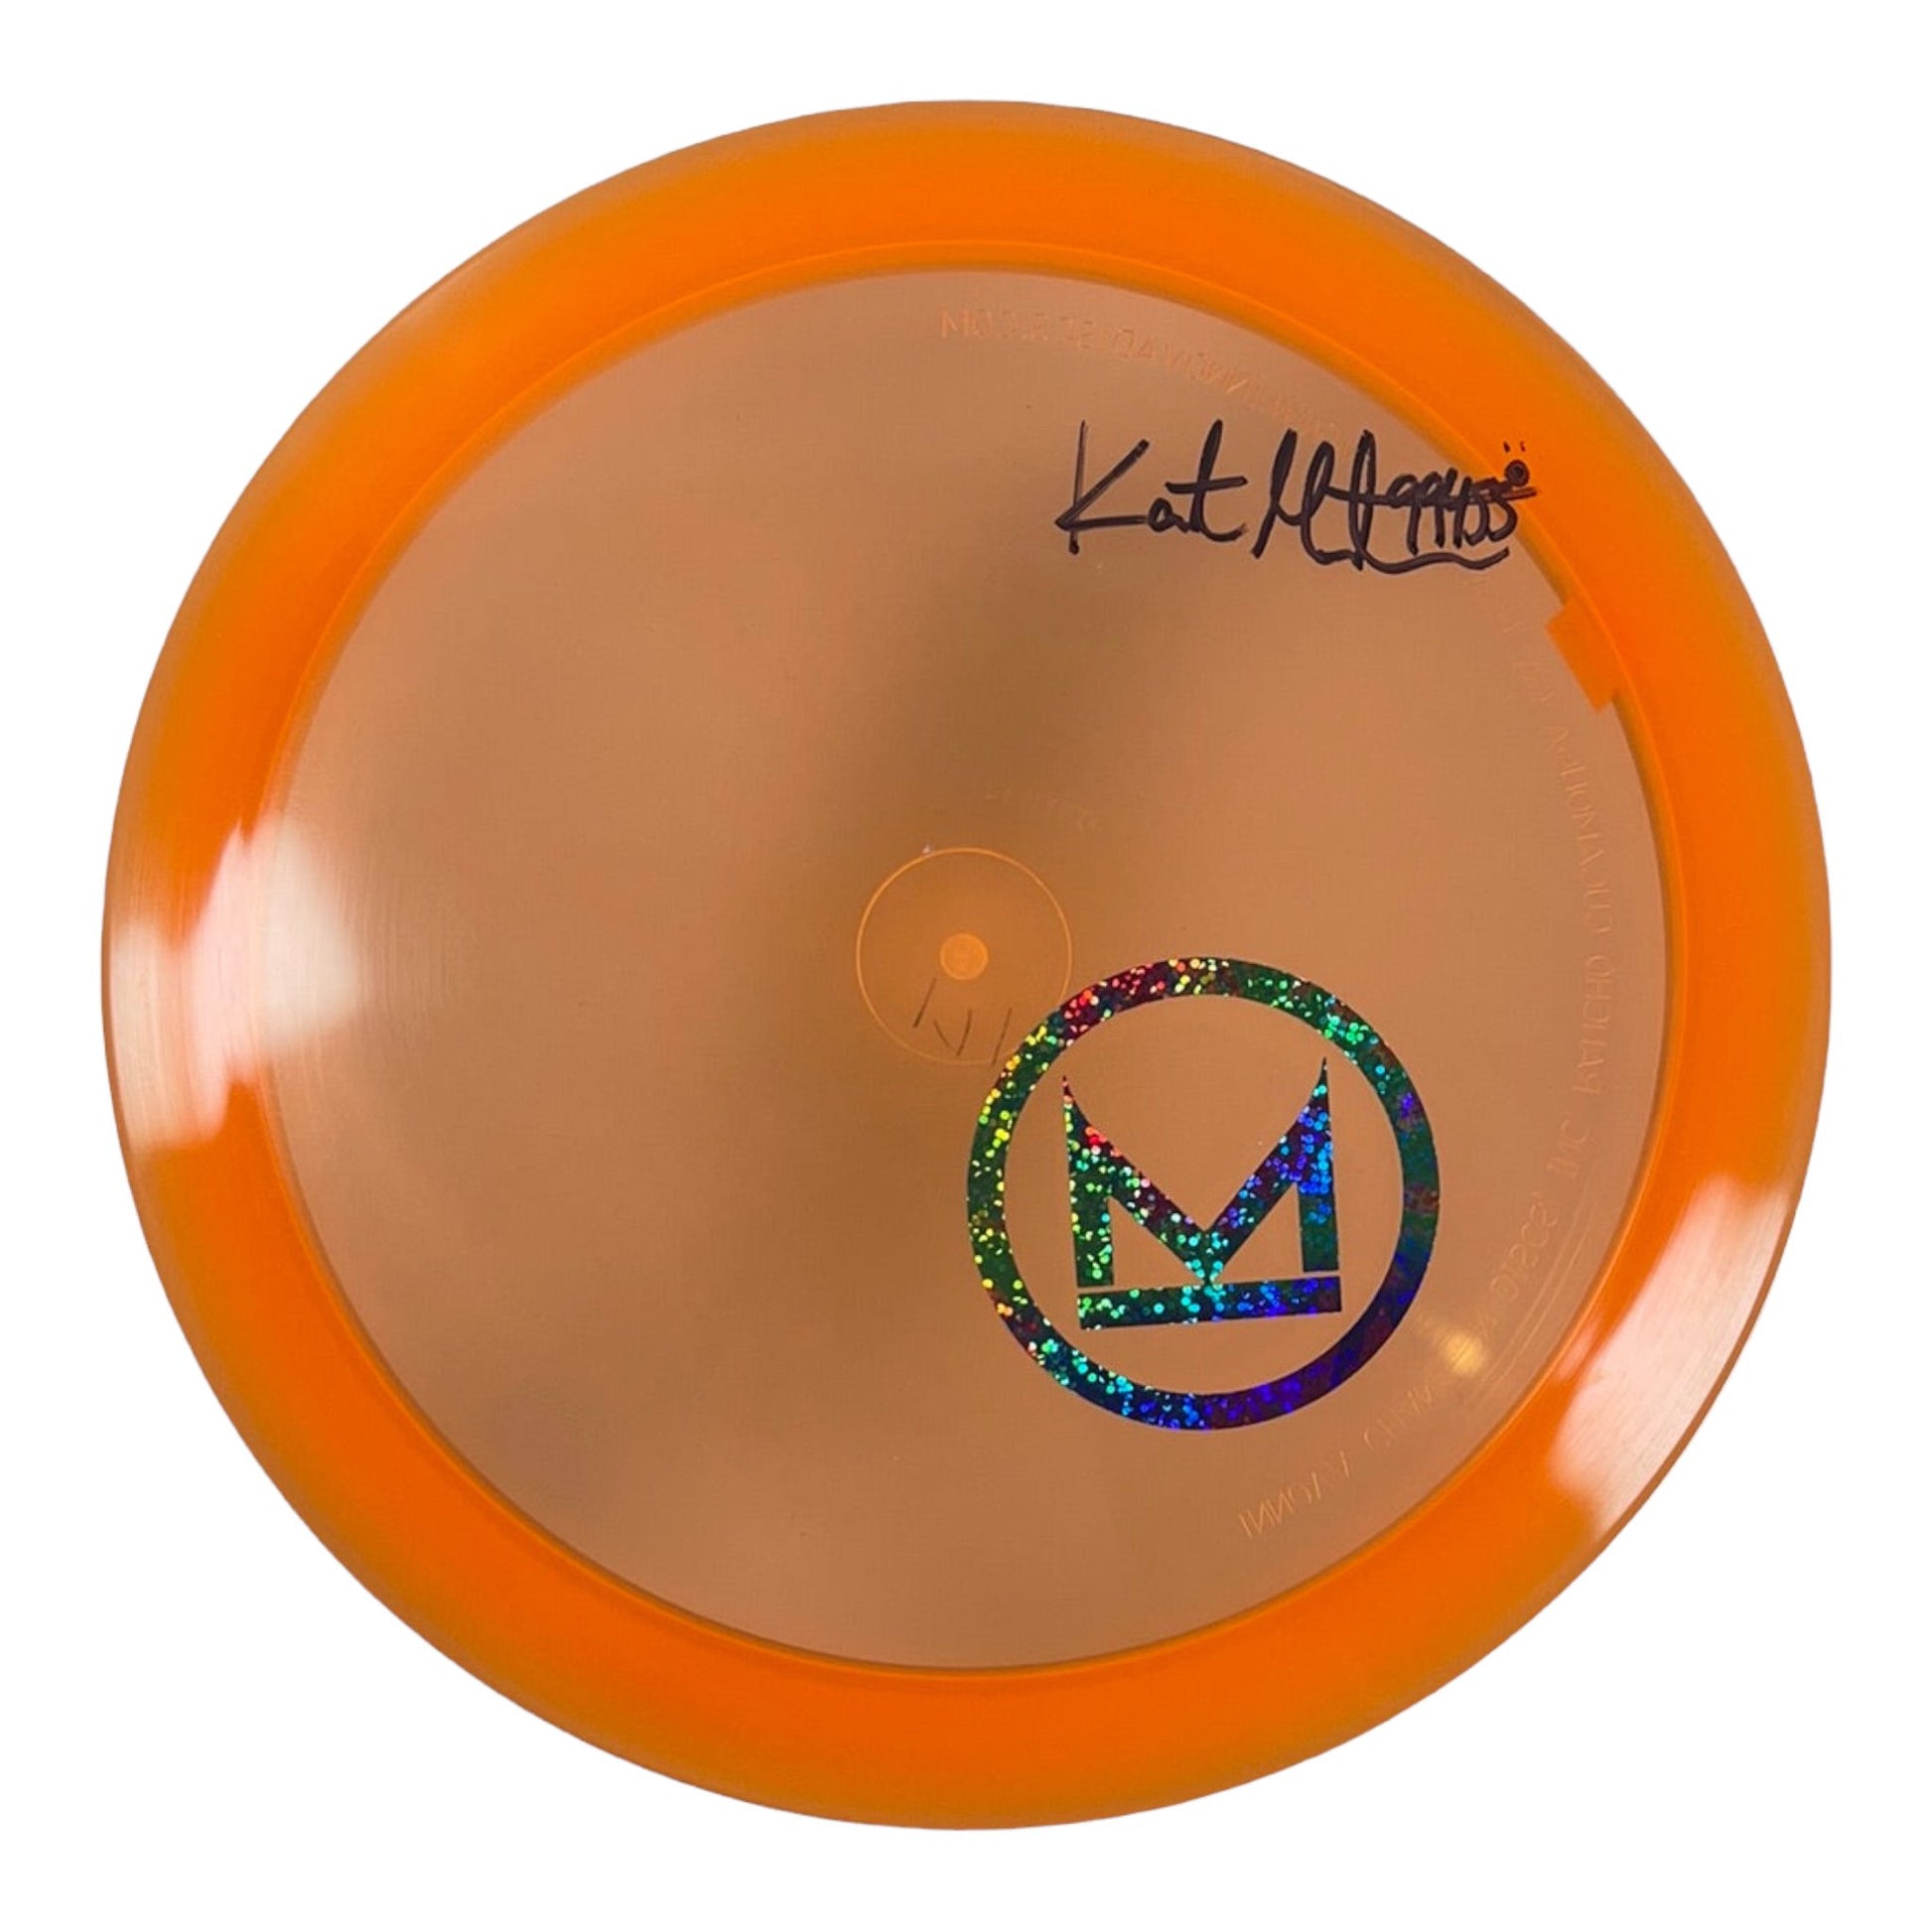 Innova Champion Discs Firebird | Champion | Orange/Partytime 171g (Kat Mertsch) Disc Golf